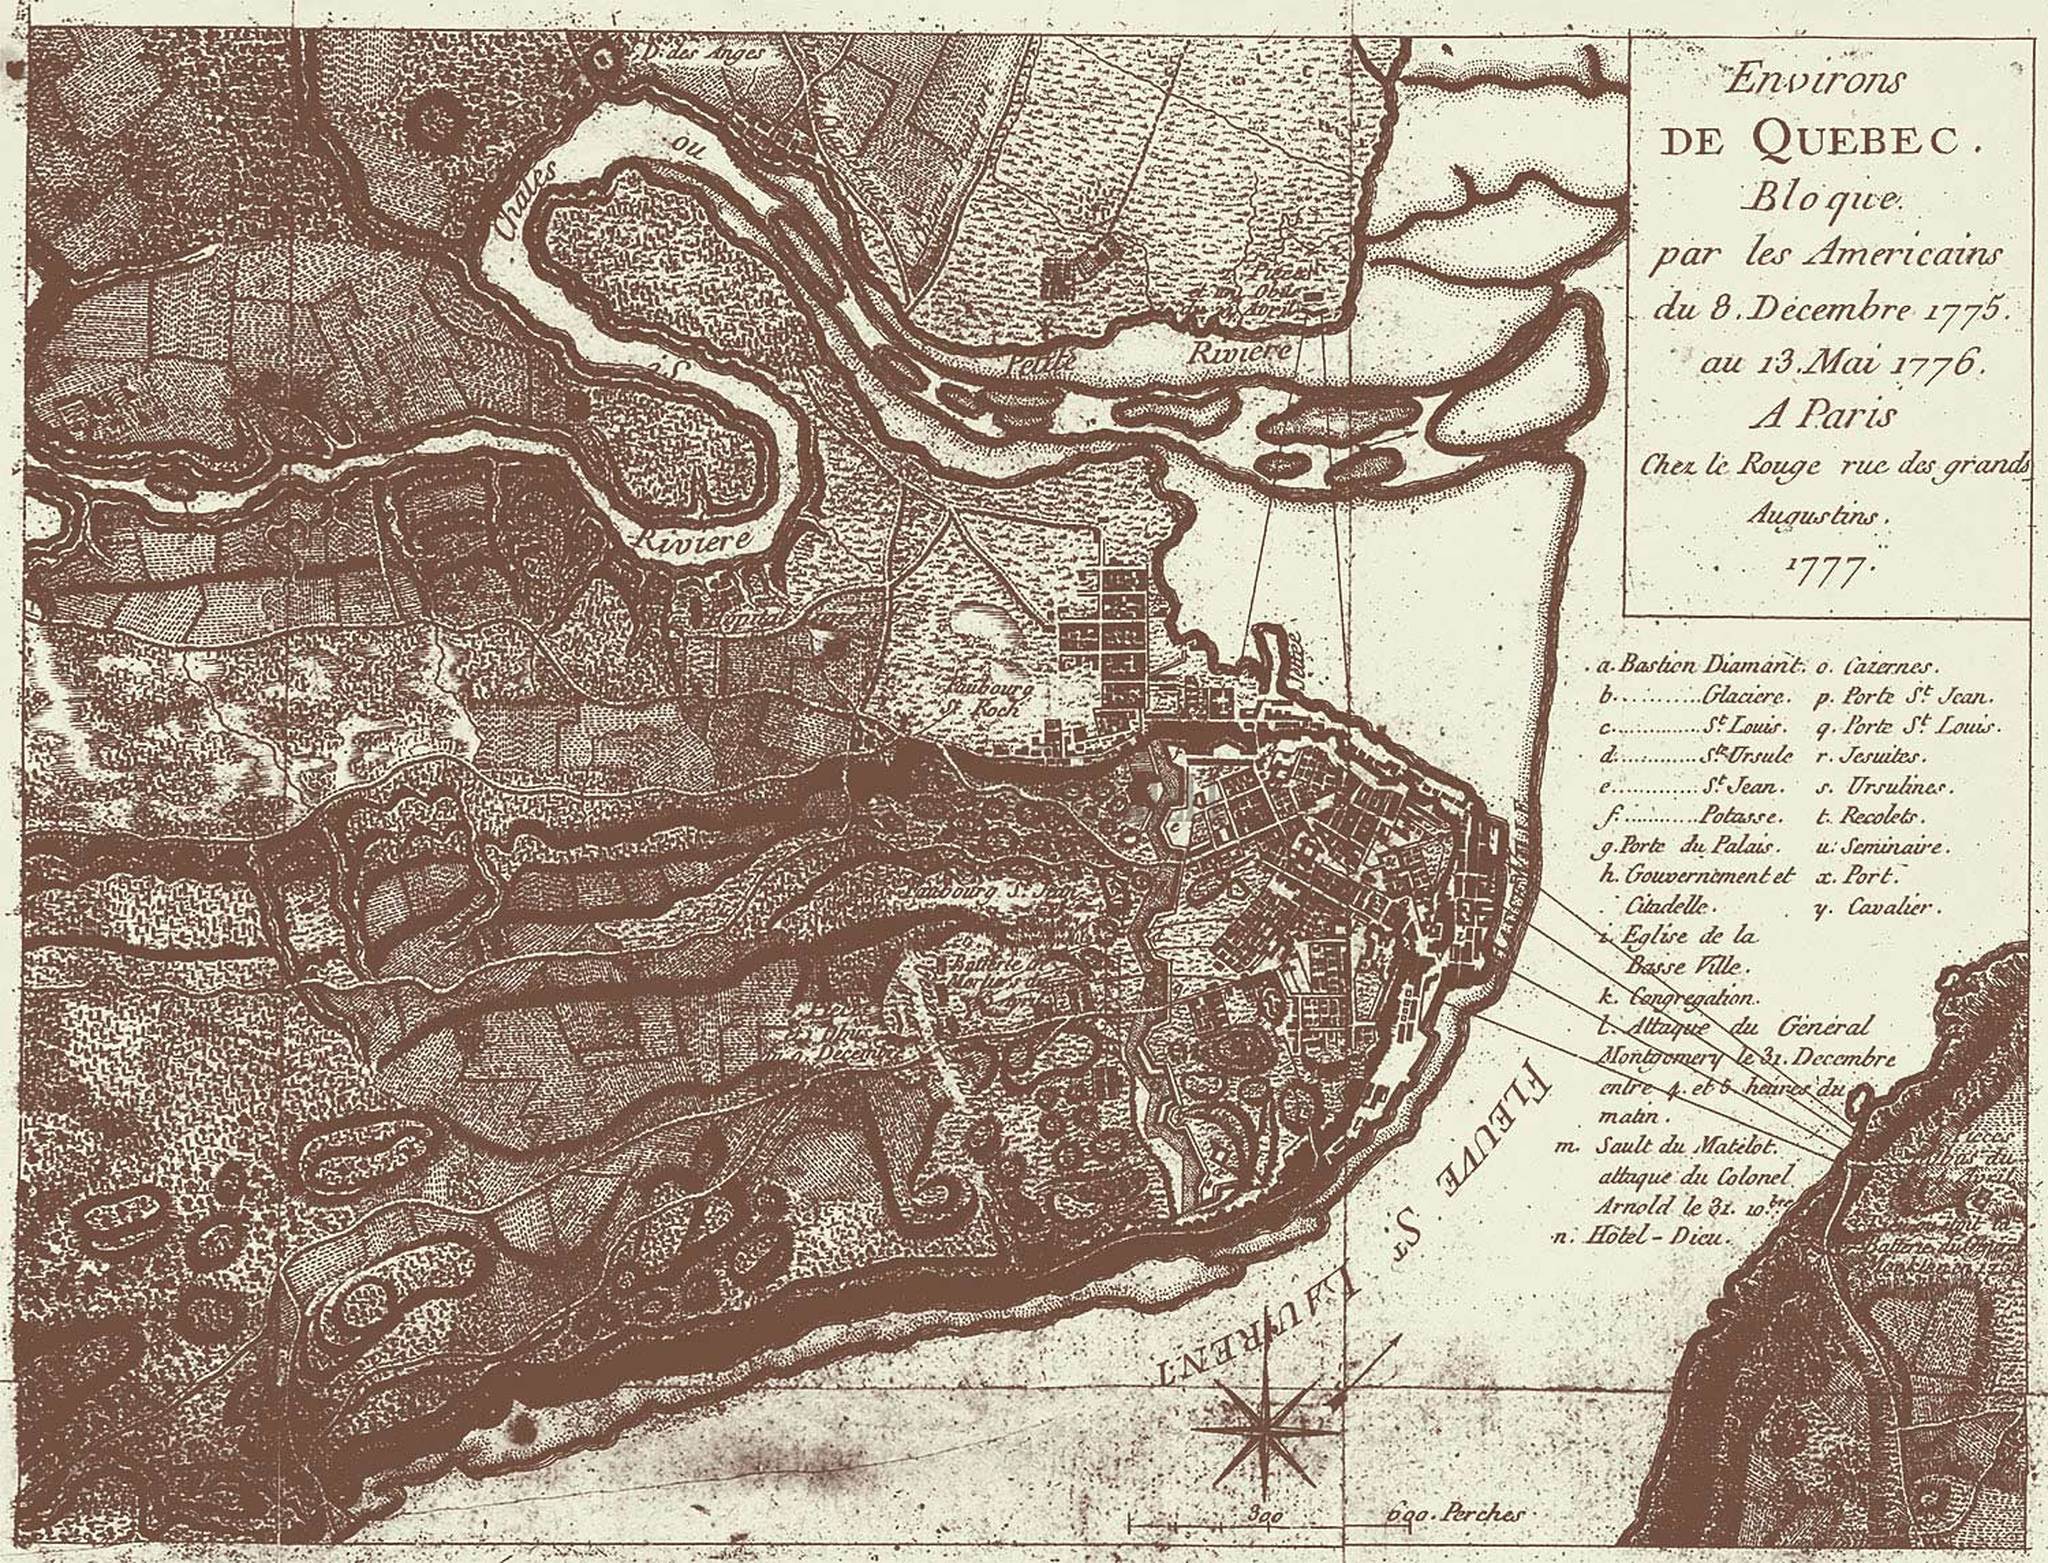 environs de quebec bloque par les americains du 8 decembre 1775 au 13 mai 1776